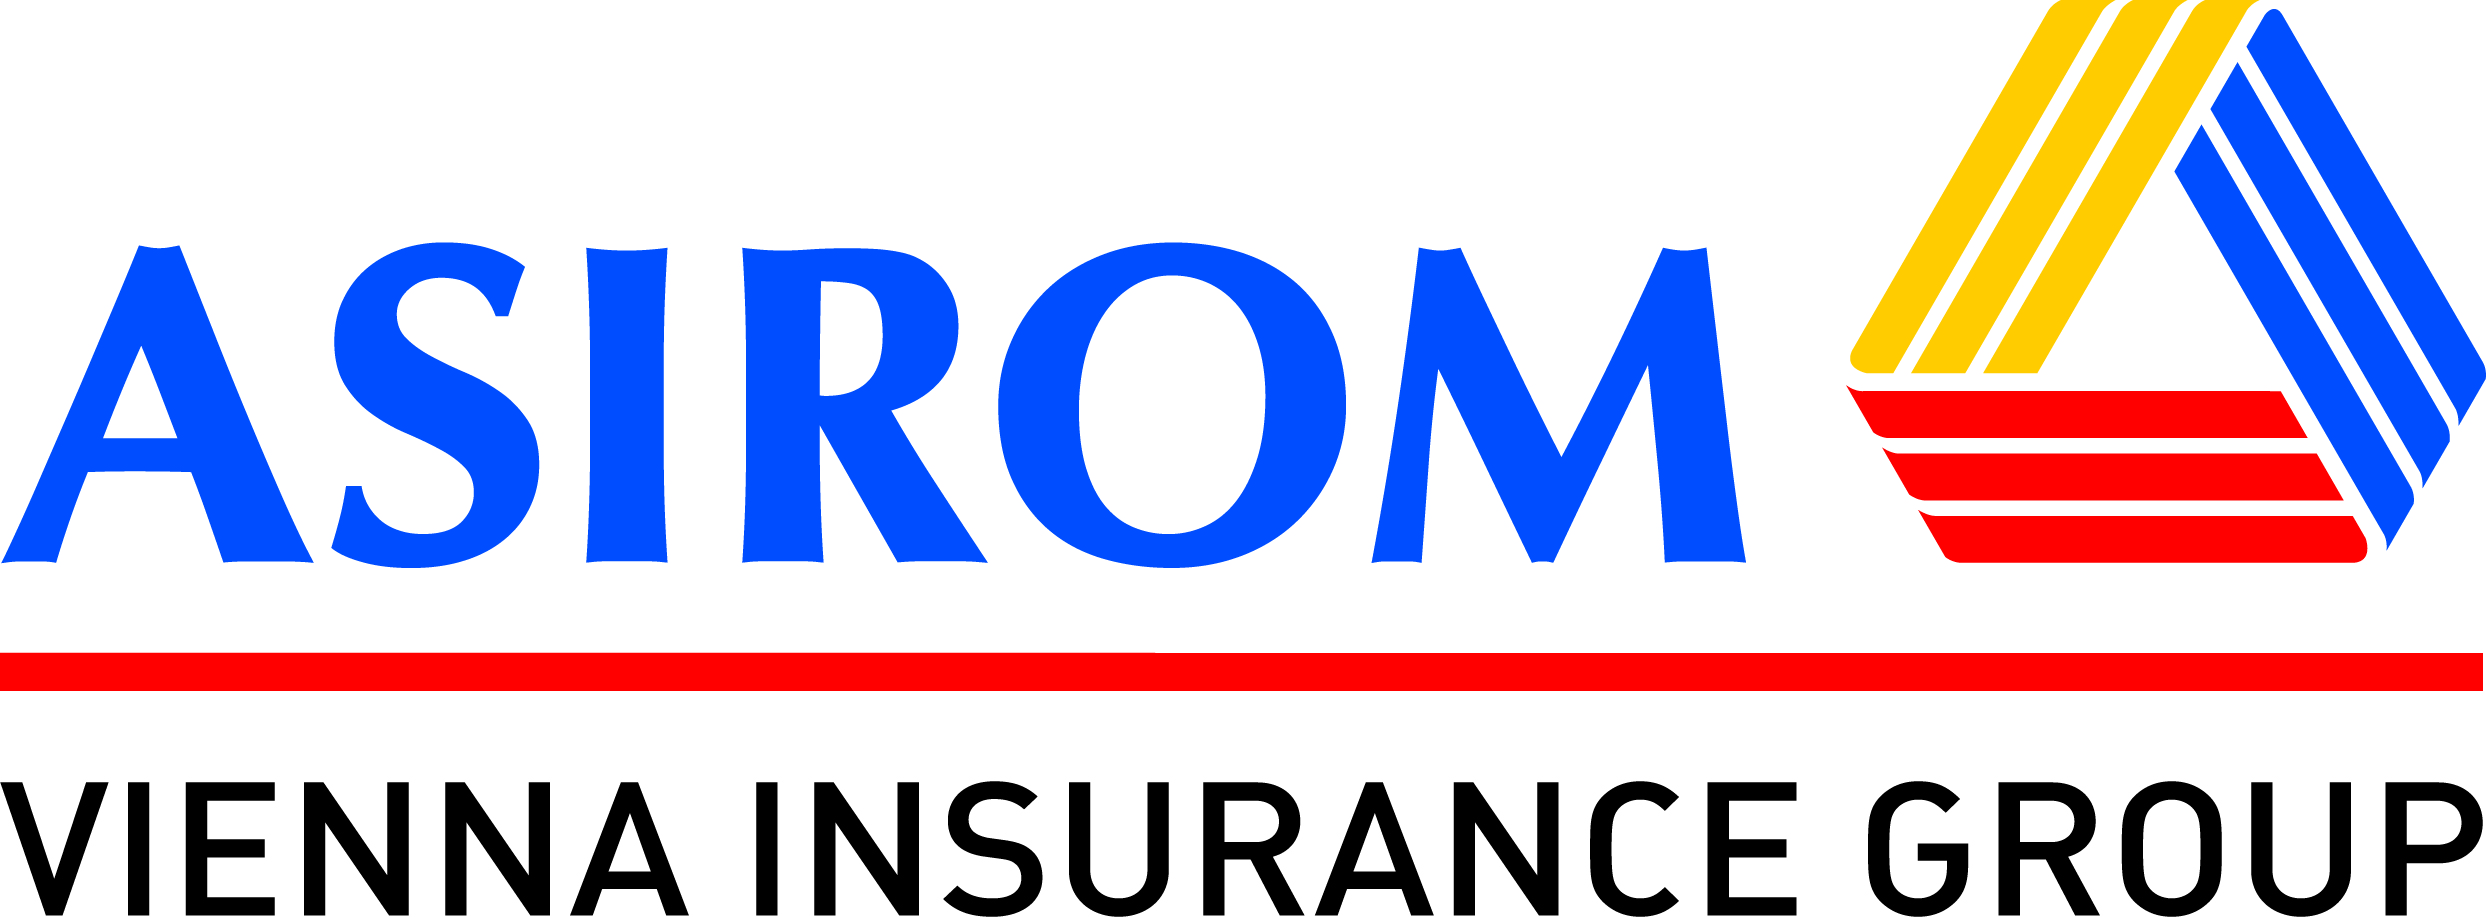 ASIROM Logo photo - 1